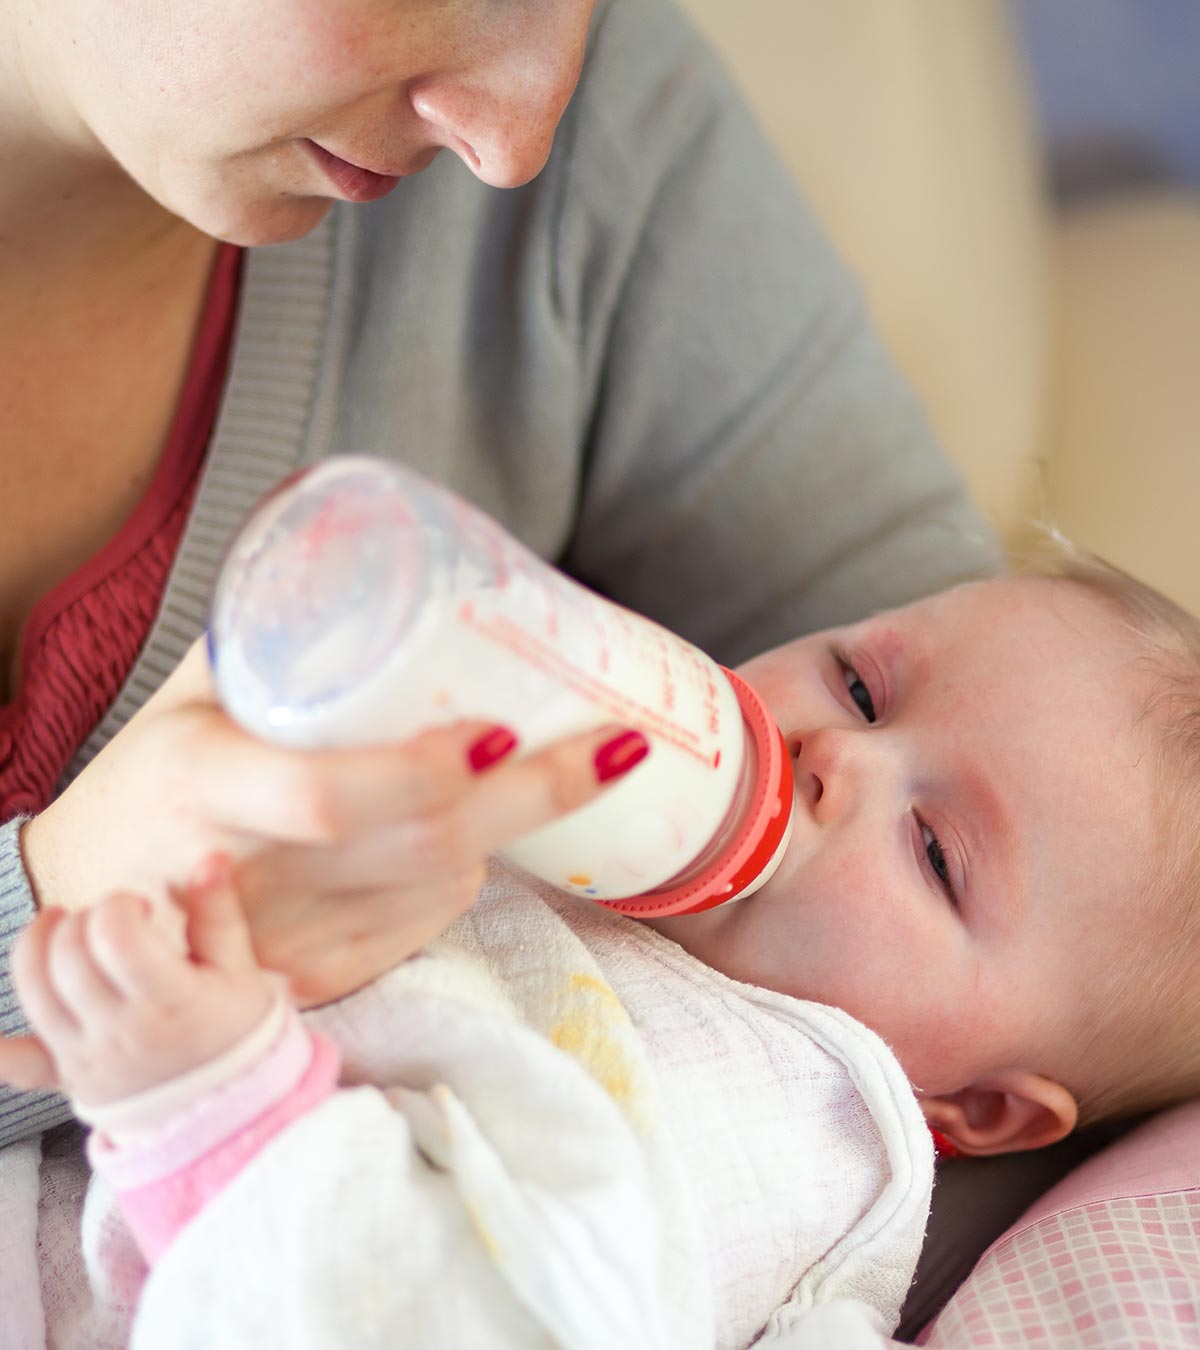 婴儿牛奶过敏:原因、症状和治疗